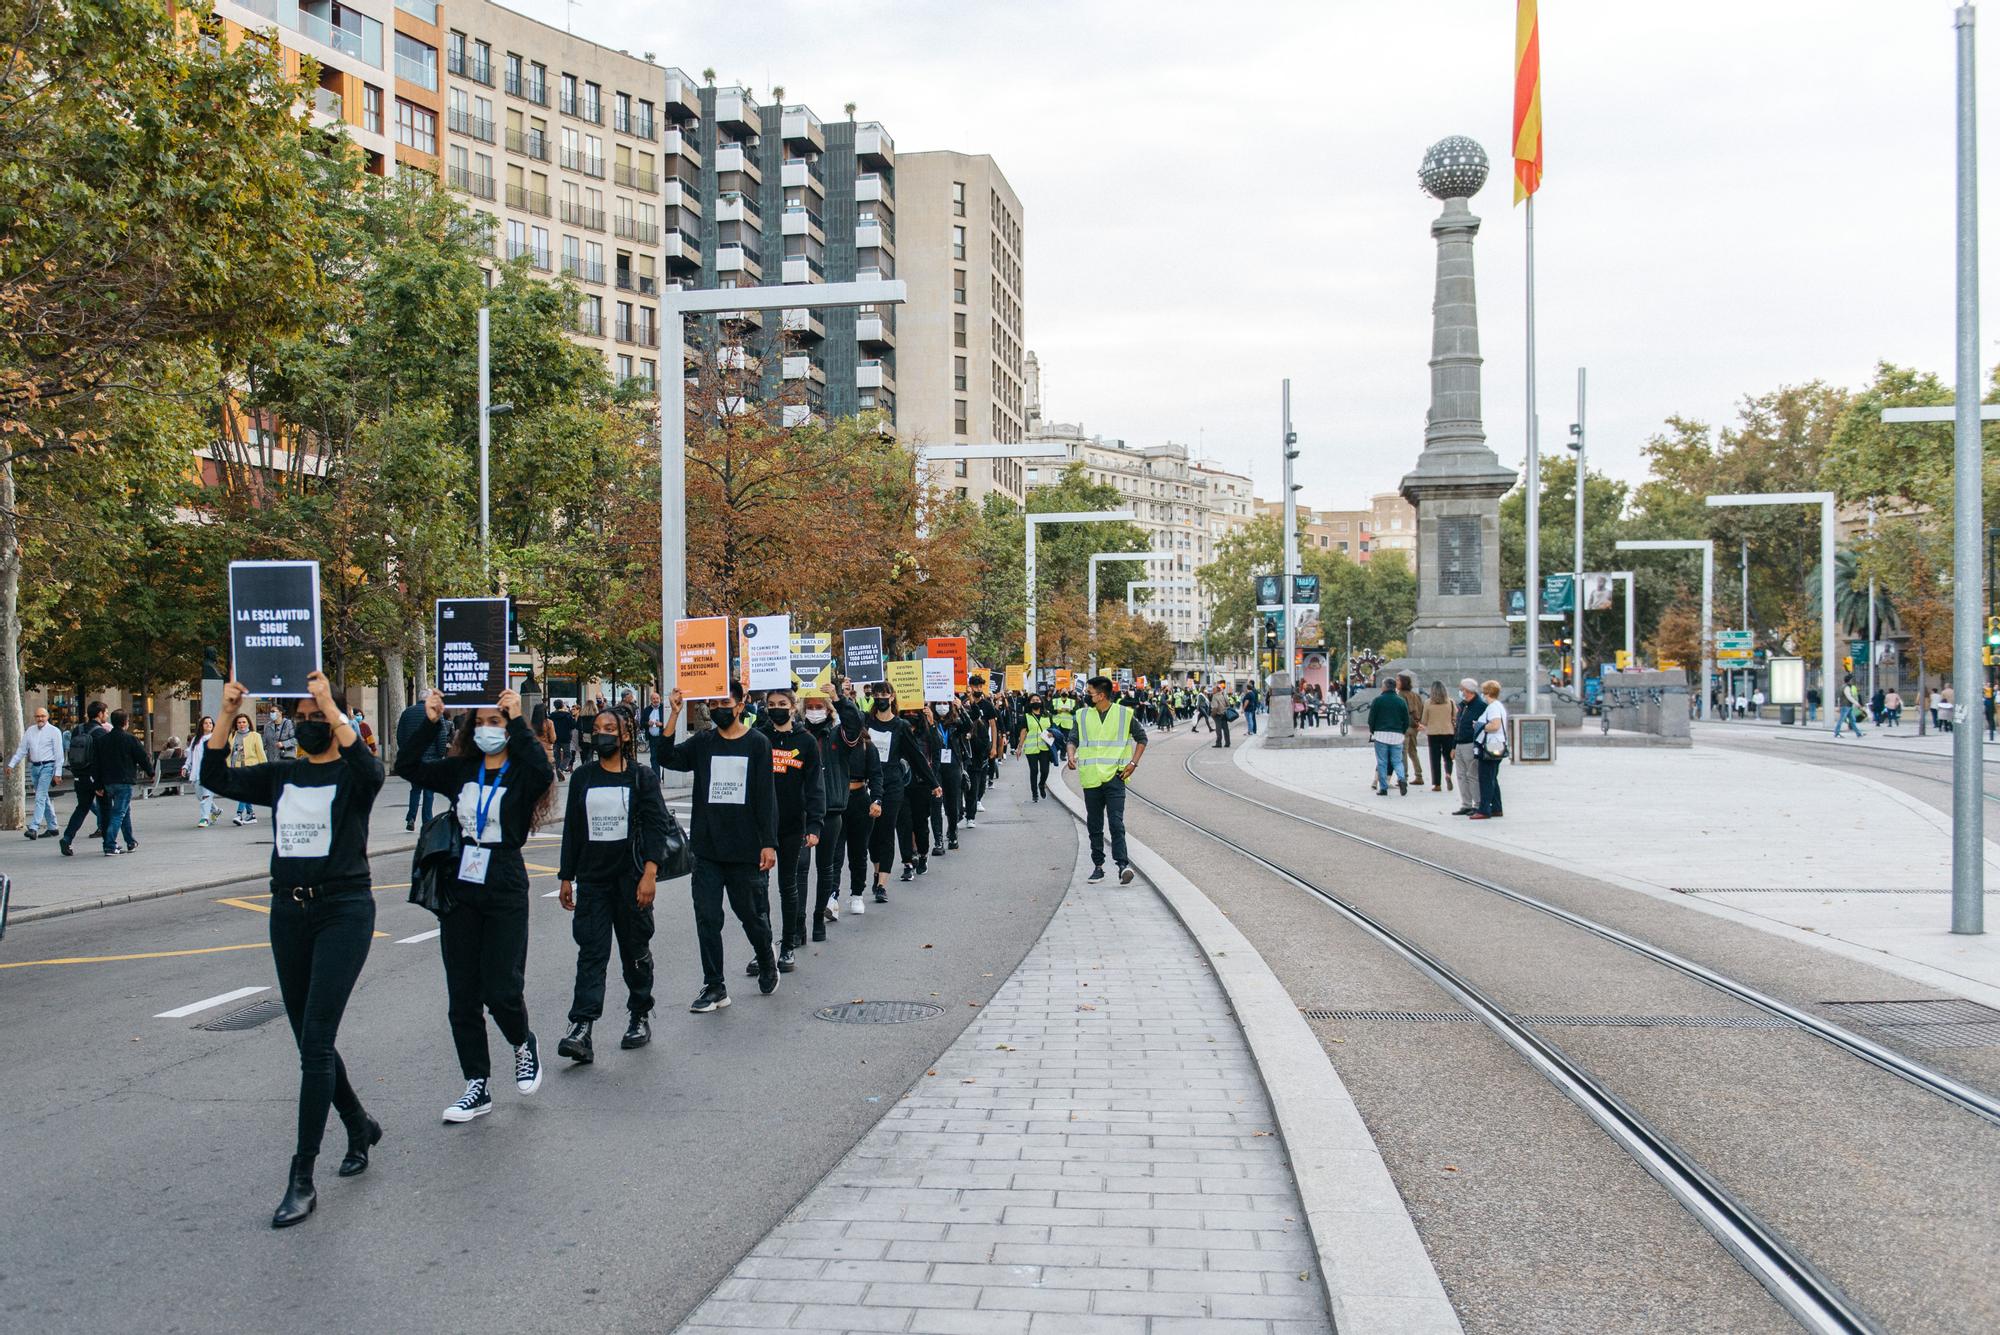 Caminando por Libertad en Zaragoza contra la trata de personas